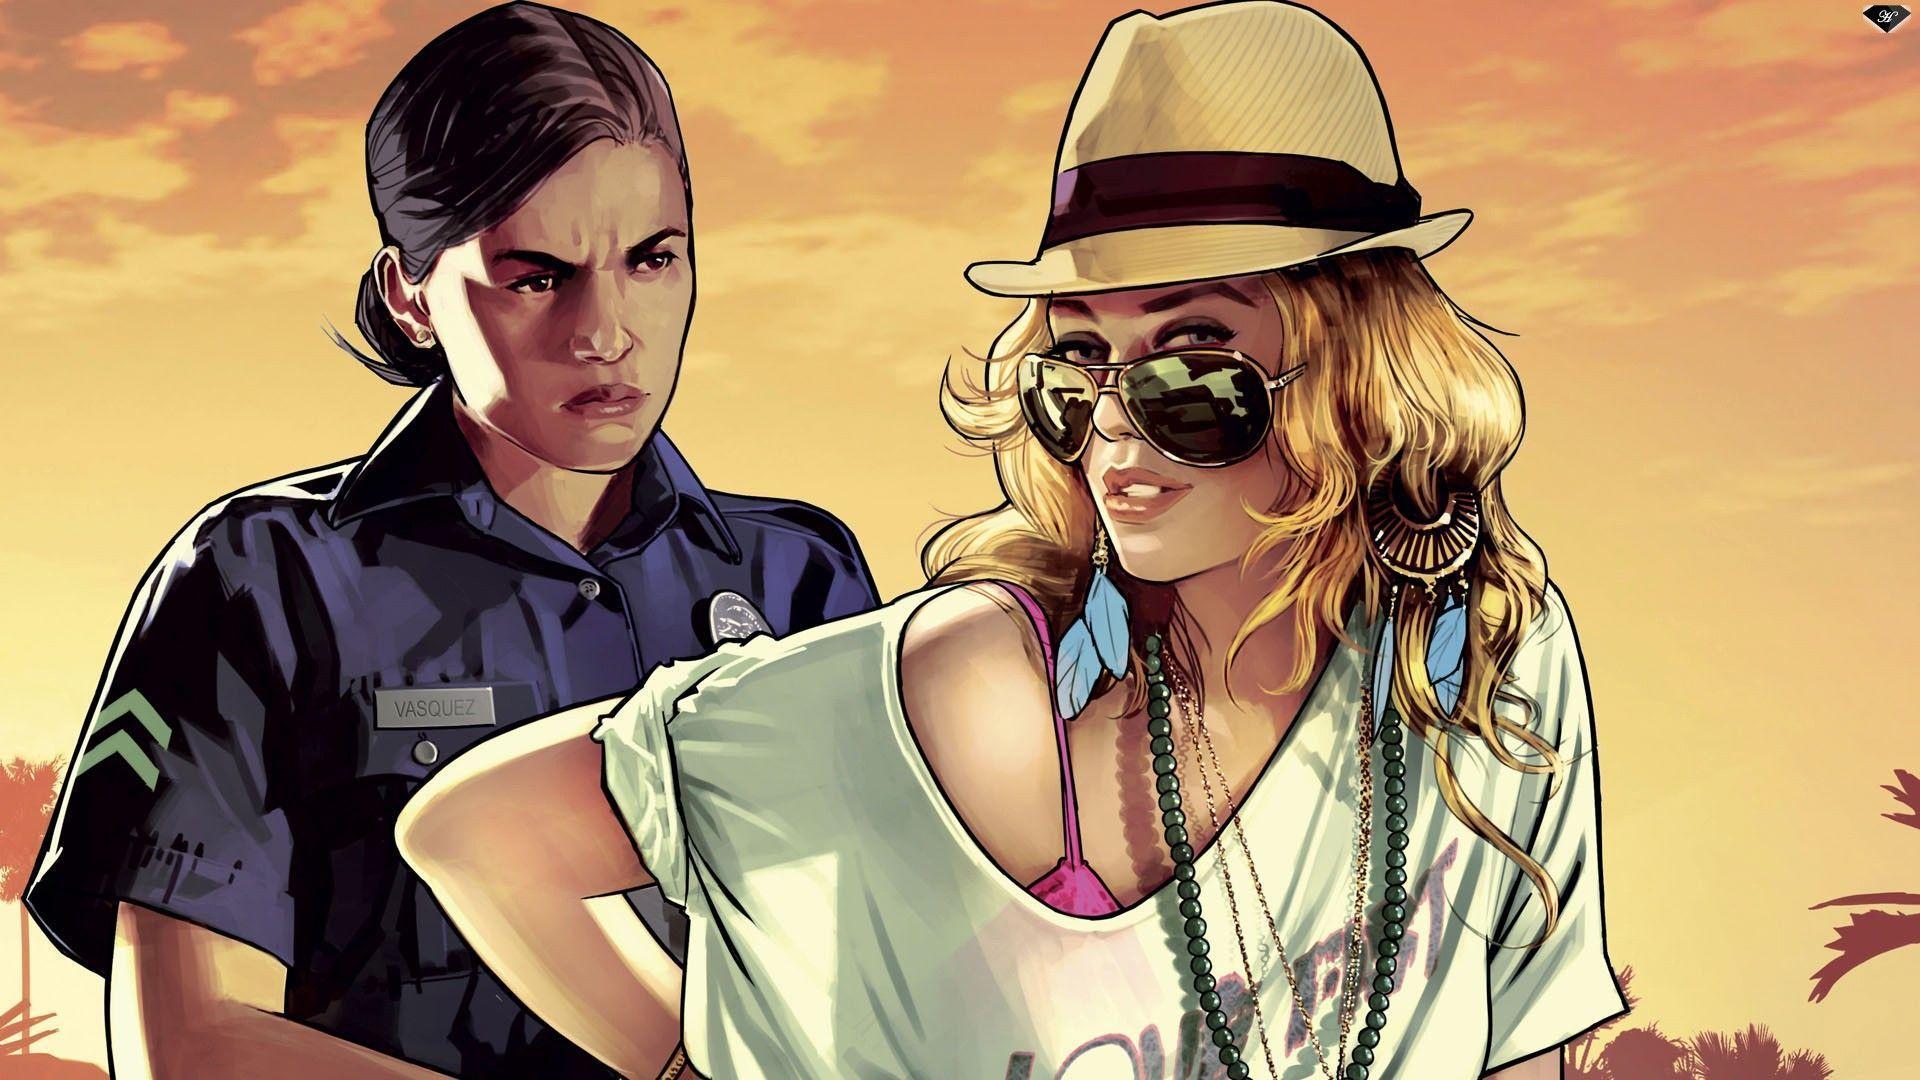 Grand Theft Auto V Wallpaper. Grand Theft Auto V Background